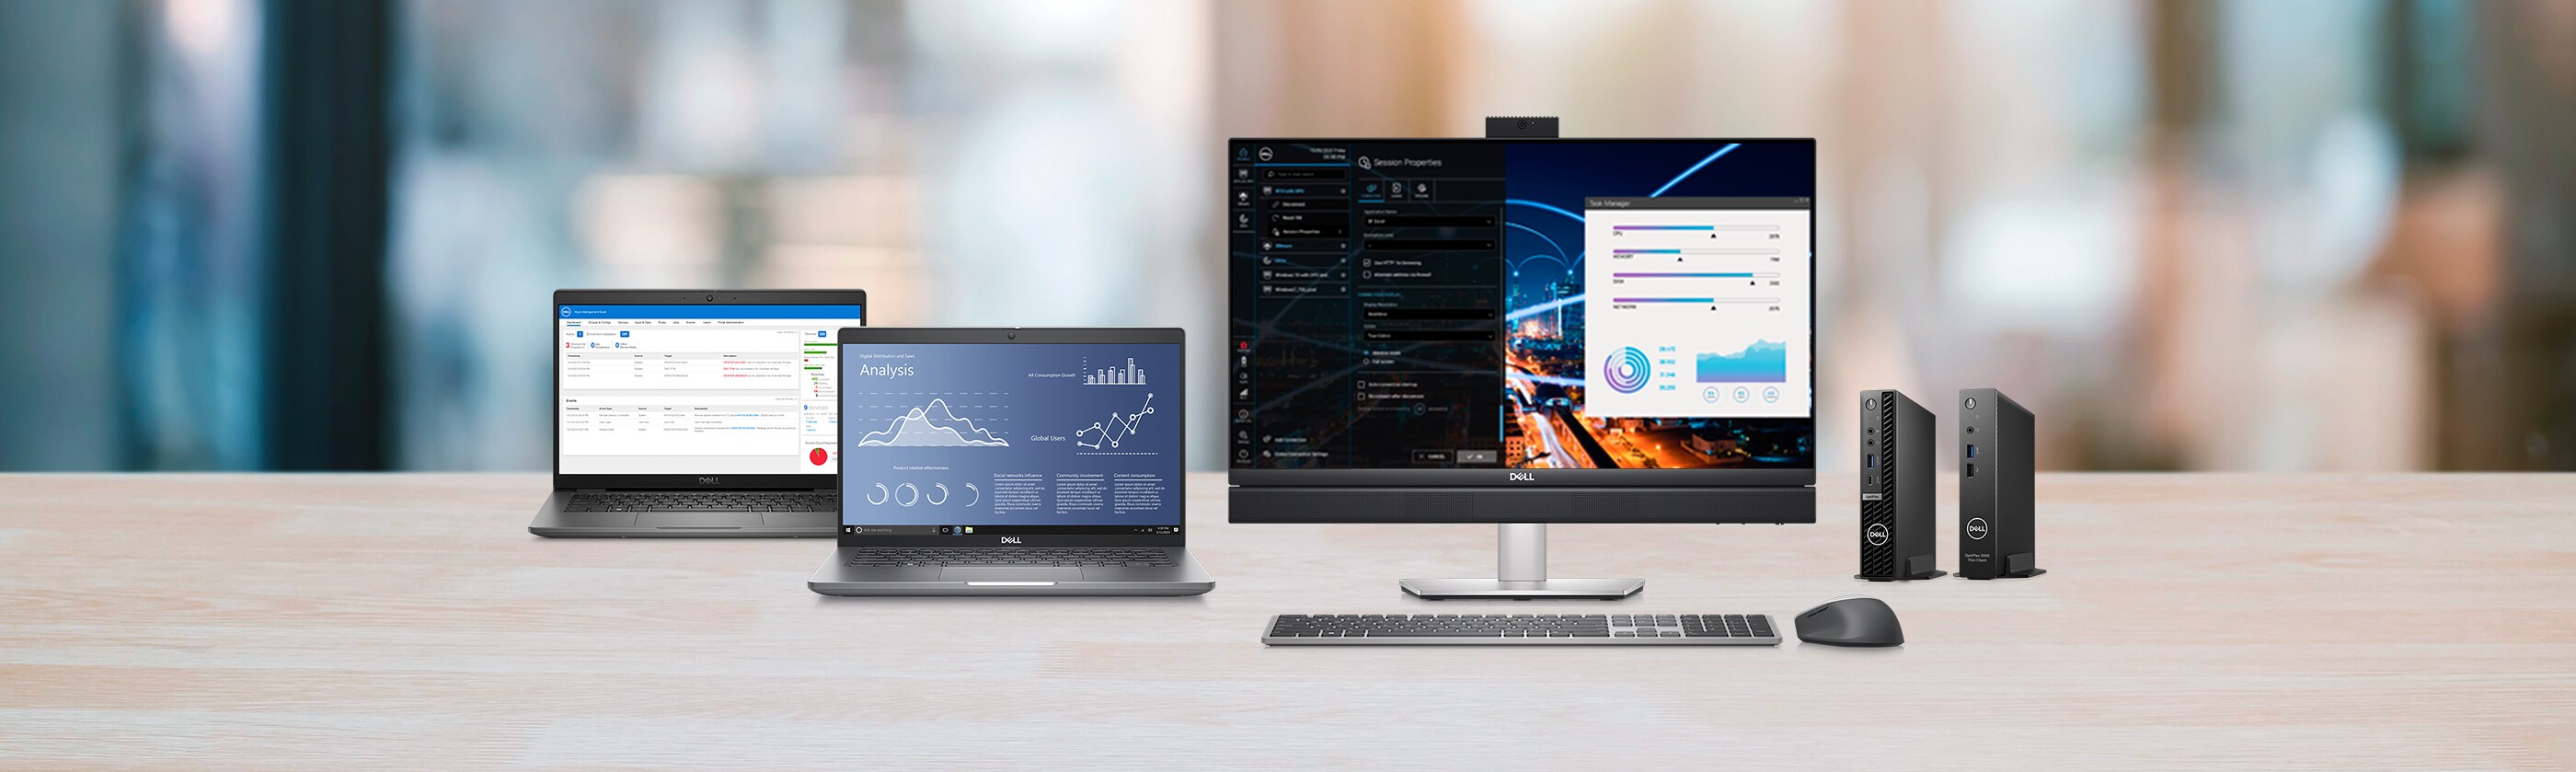 Windows® 10 IoT Enterprise: una opción de software optimizado y flexible de Dell